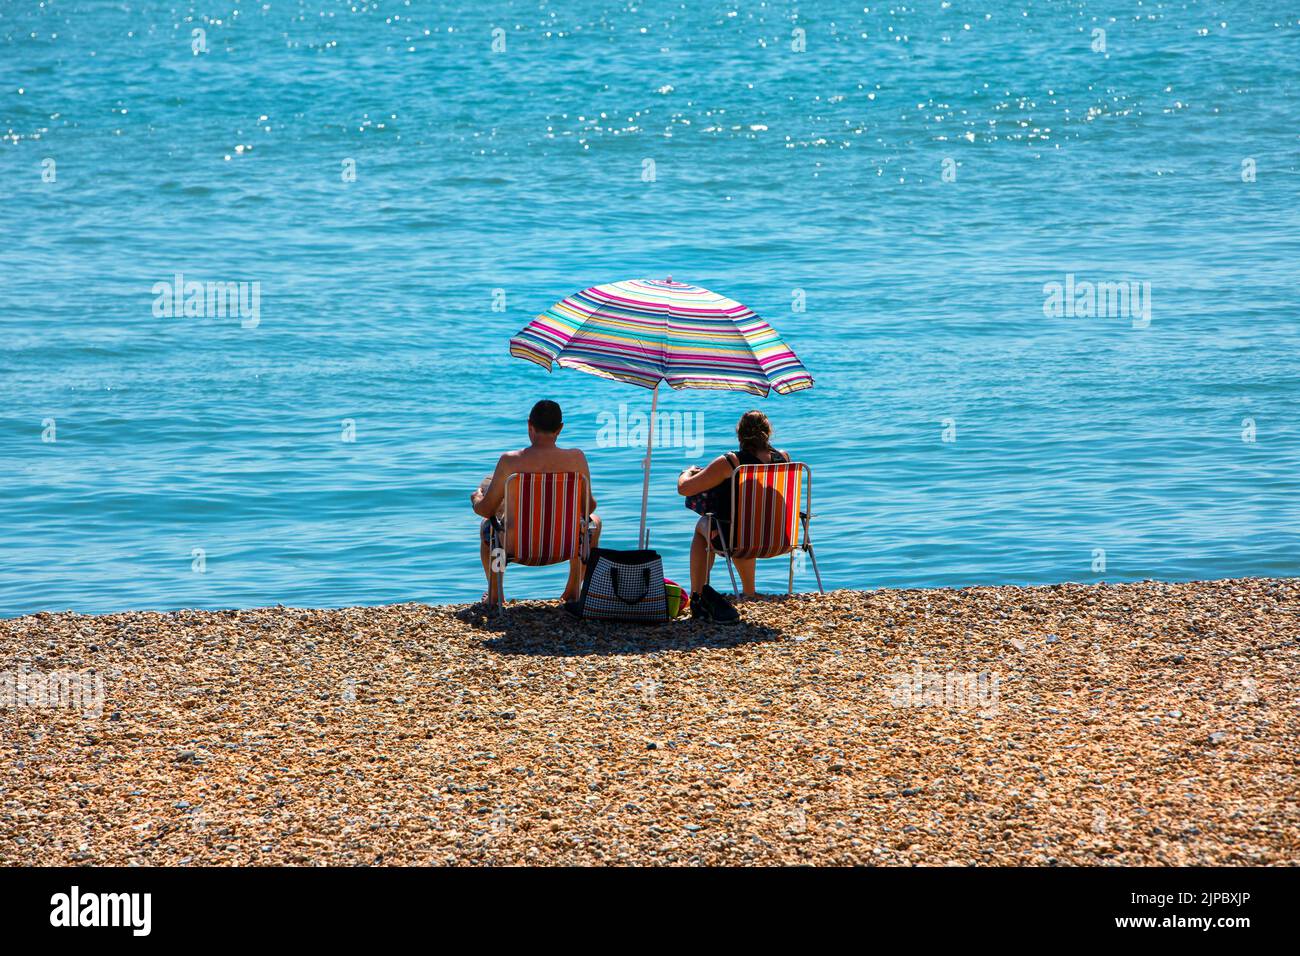 Una pareja en sillas de playa en una playa de guijarros junto a un mar azul y tranquilo. Foto de stock